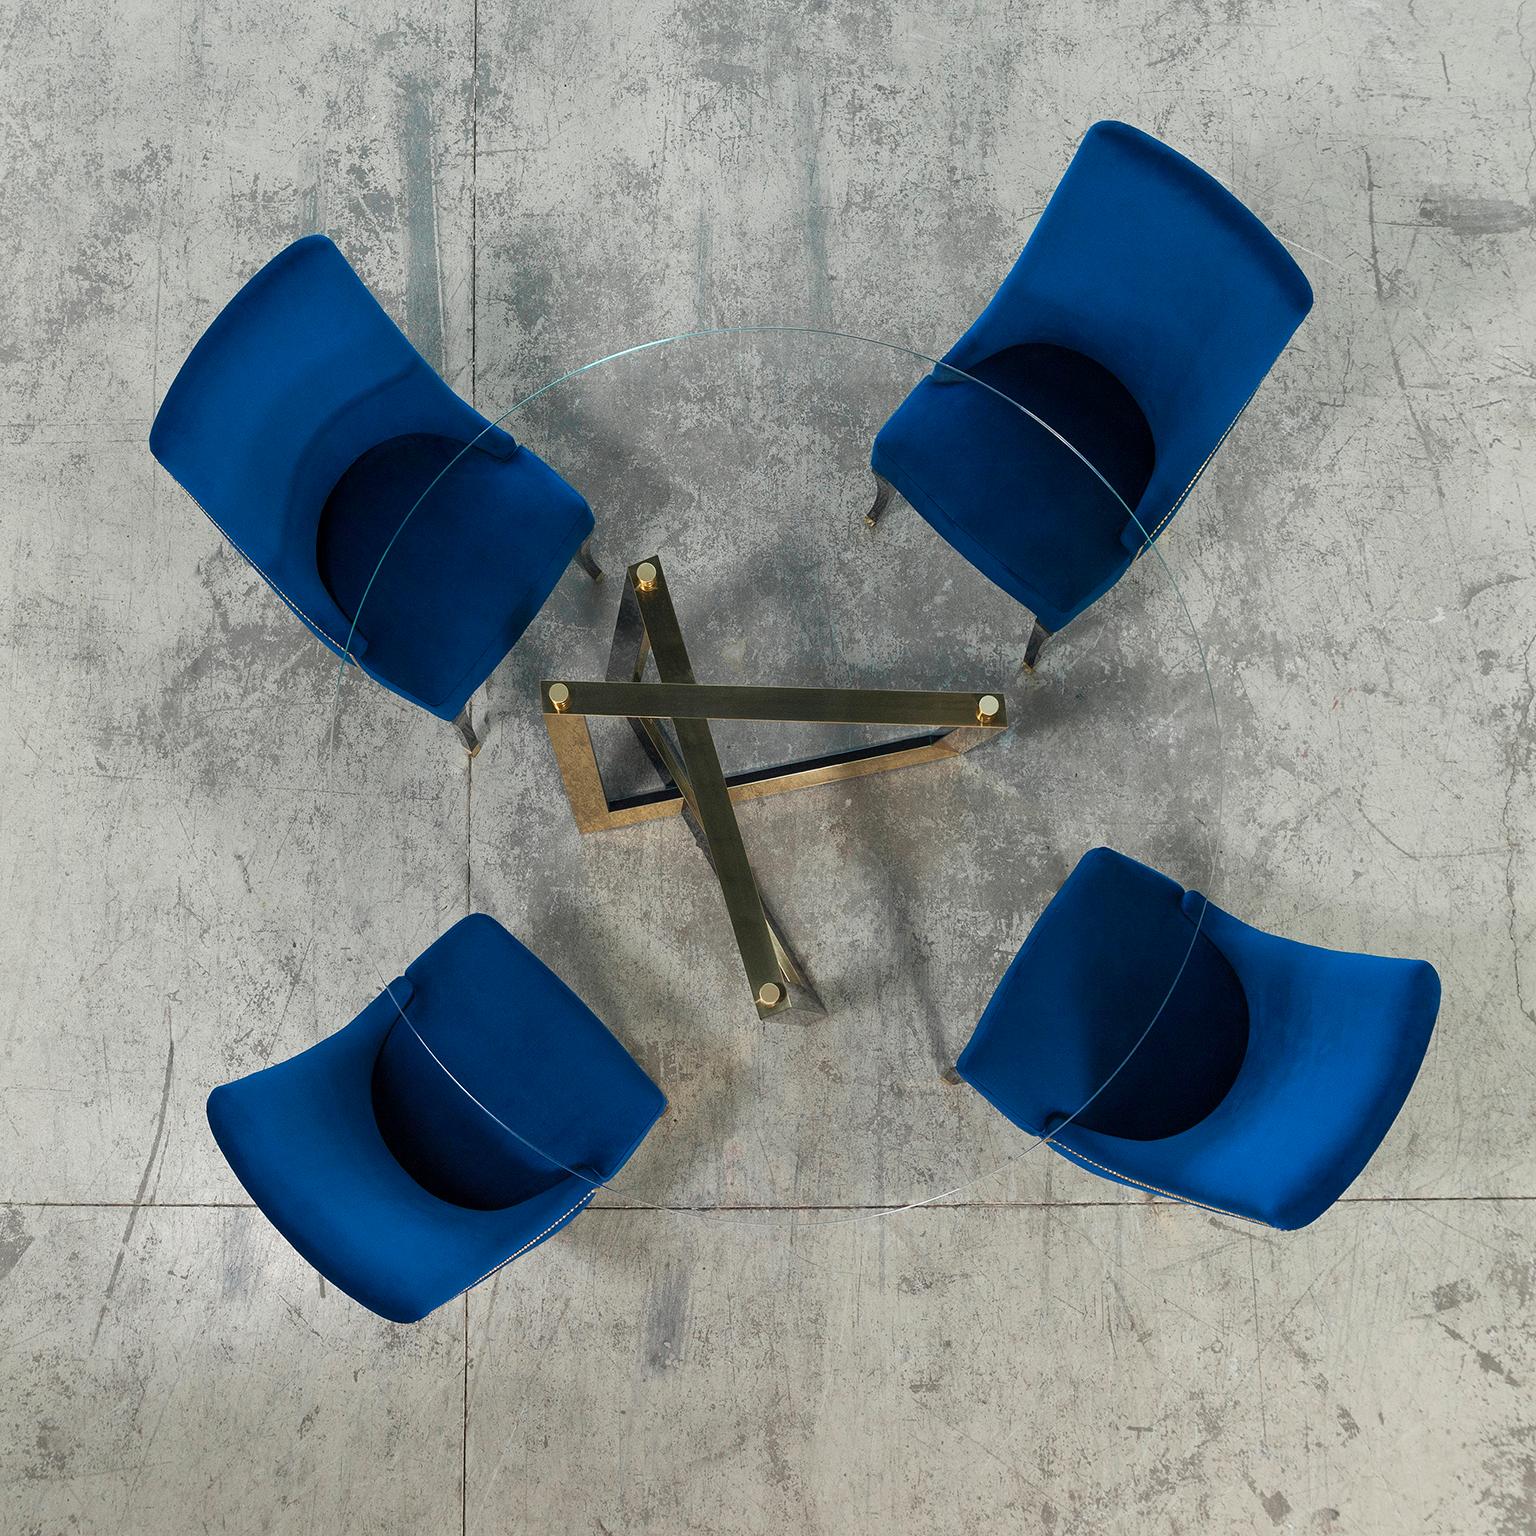 Pleathea Chair, Collection'S Contemporary, handgefertigt in Portugal - Europa von Greenapple.

Plathea schafft einen eleganten, klassischen Komfort in Ihrem Esszimmer. Dieser mit dunkelblauem Samt gepolsterte Holzstuhl mit goldener